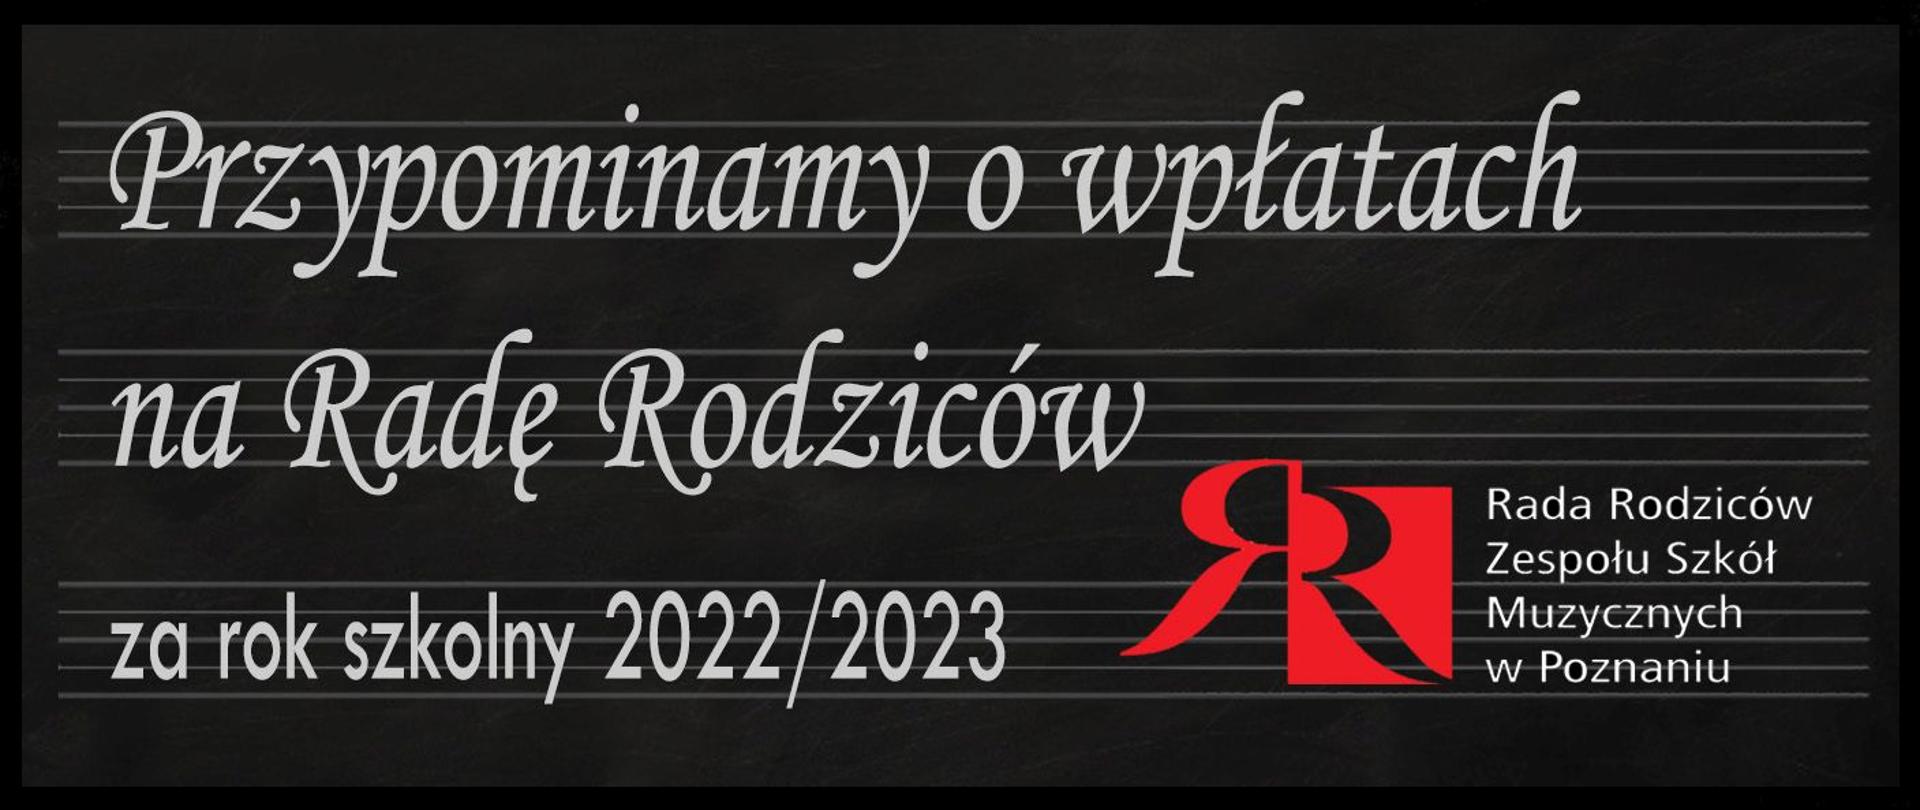 Grafika z tłem czarnej tablicy w pięciolinie oraz logiem rady Rodziców z napisem: Przypominamy o płatach na Radę Rodziców za rok szkolny 2022/2023